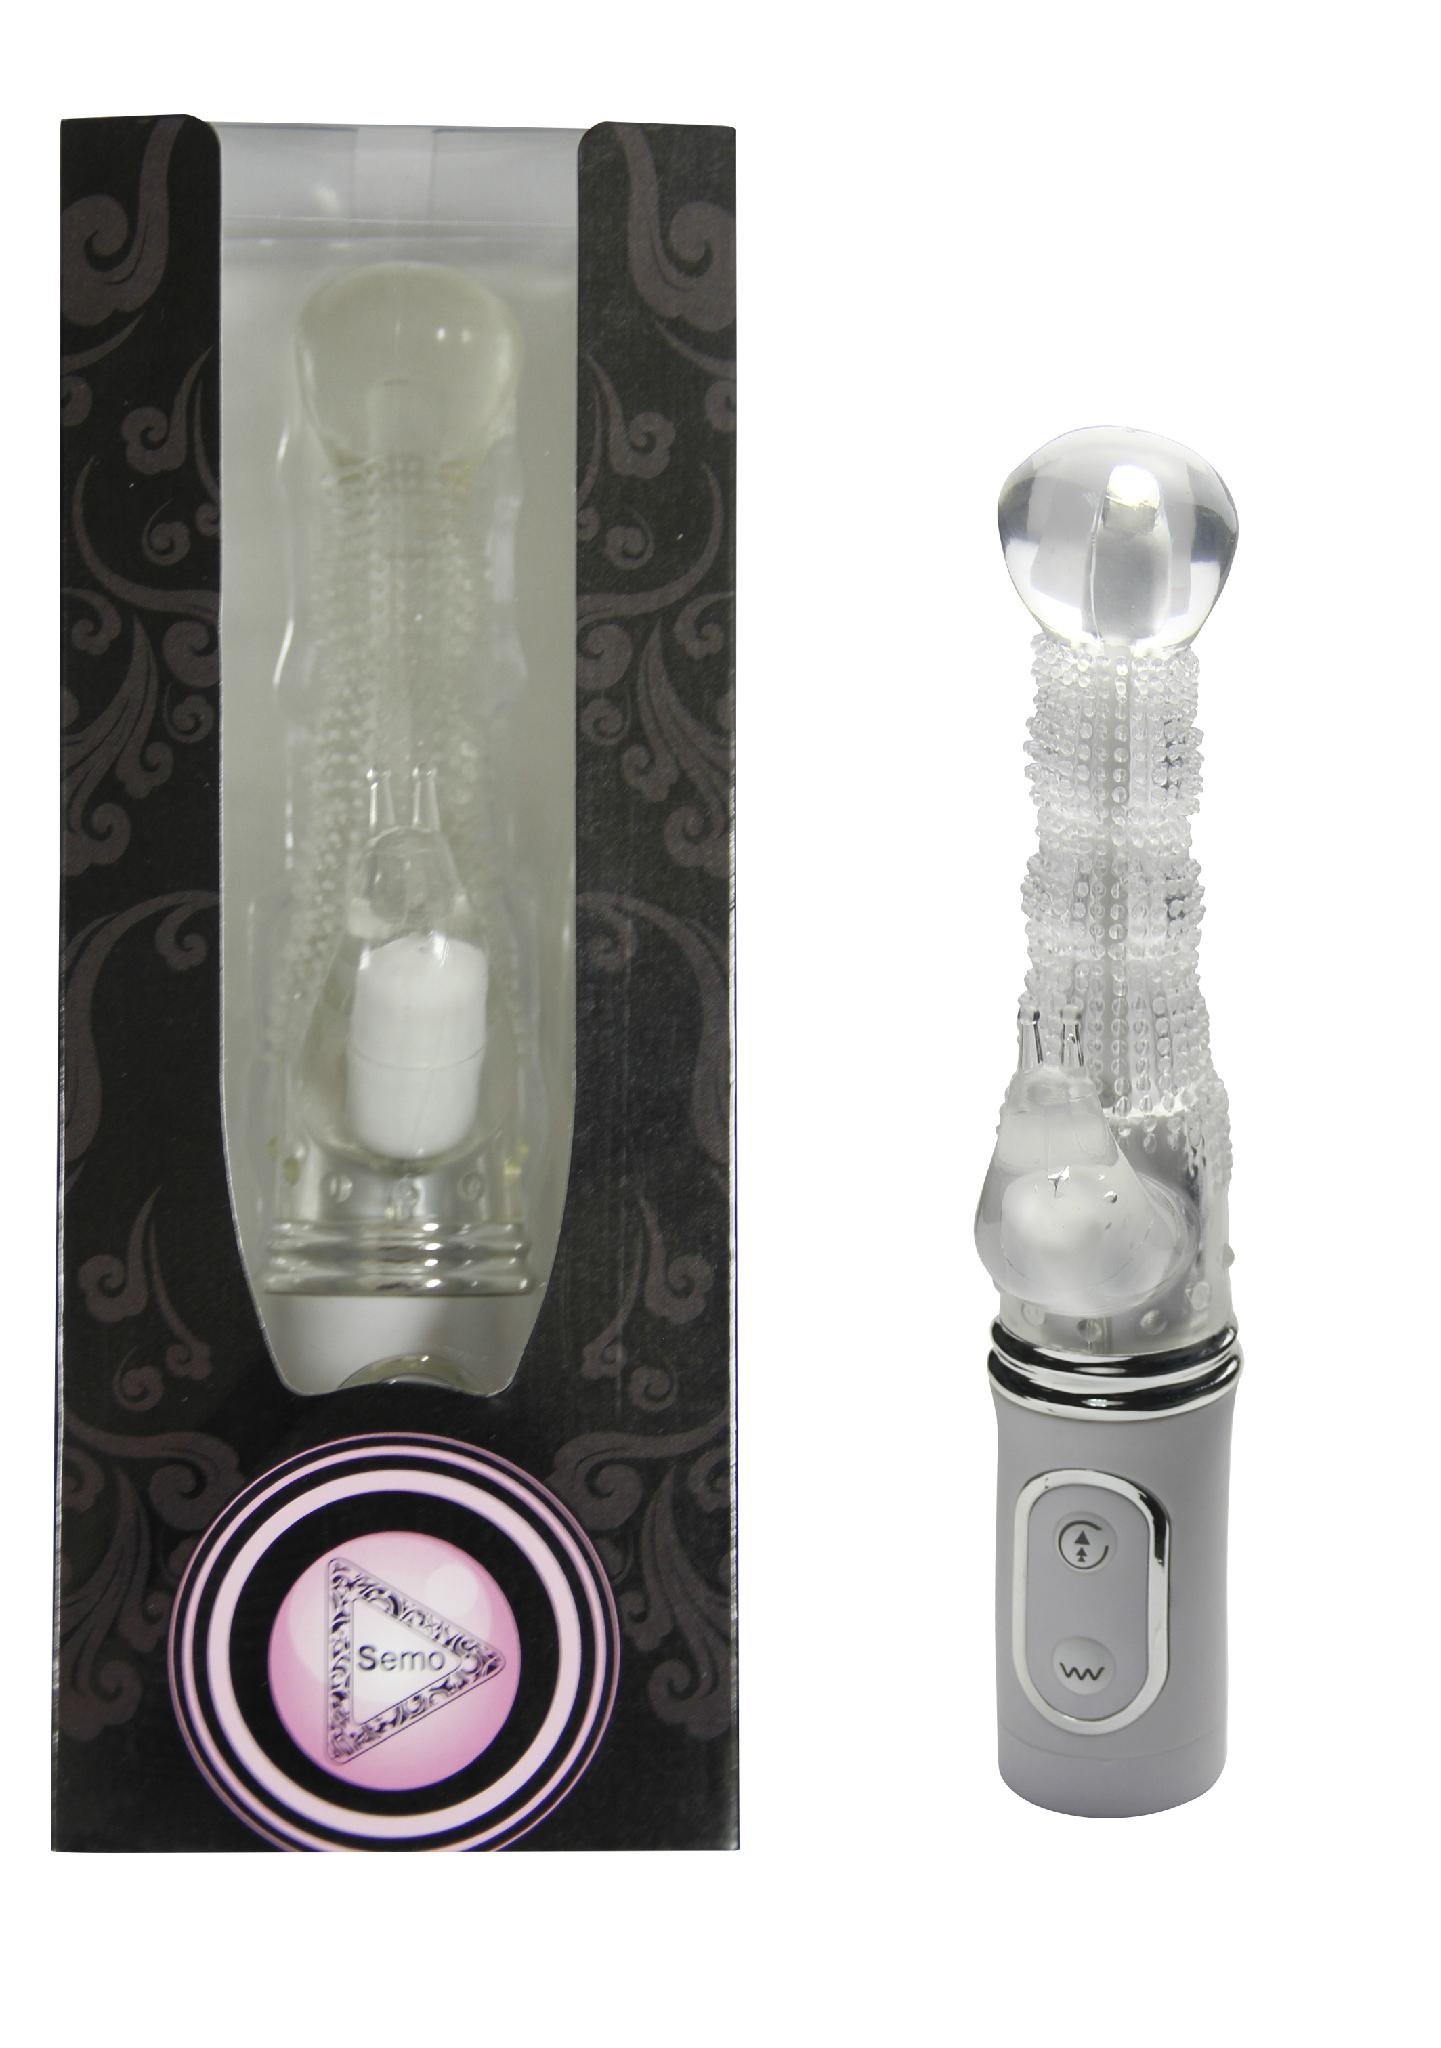 Magic Diamond Dual G-spot Vibrators Vibrating massager products for female 4